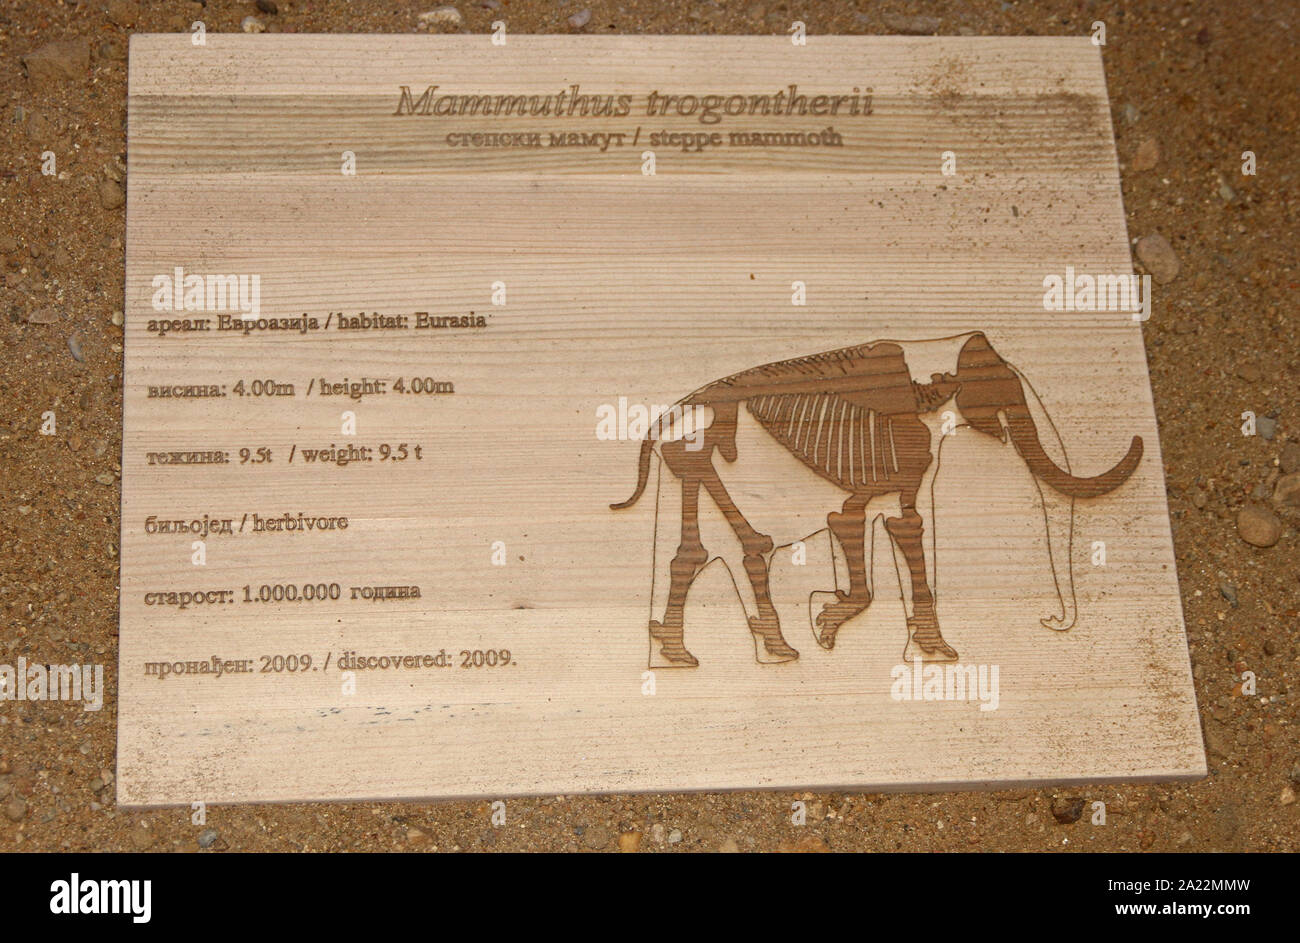 Segno che mostra i dettagli di steppa mammoth fossili, Mammuthus trogontherii, Viminacium, scientifico sito archeologico, Kostolac, Branichevo distretto, Serbia. Foto Stock